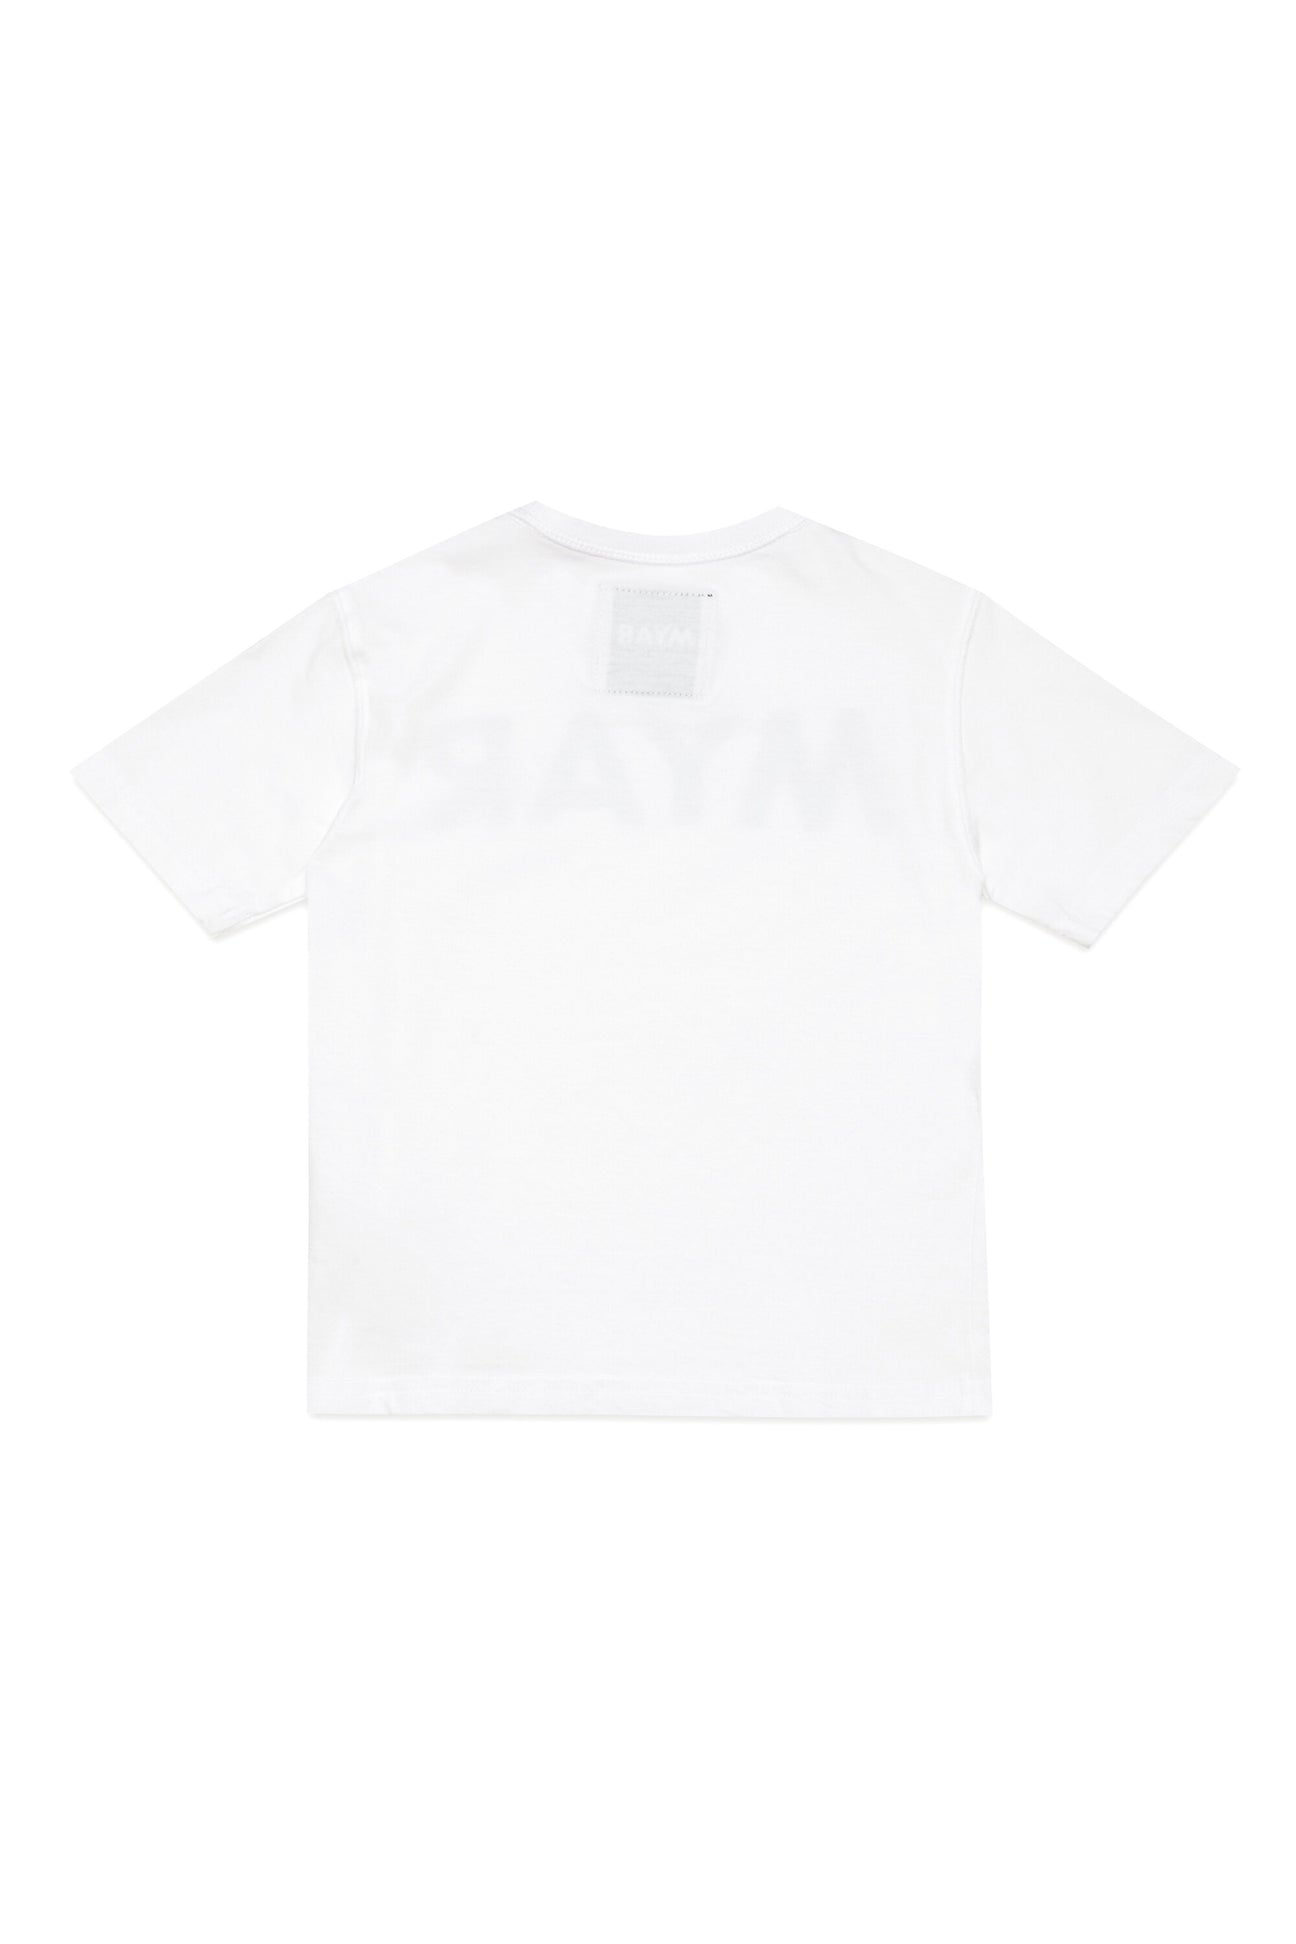 Camiseta en algodón deadstock con logotipo MYAR Camiseta en algodón deadstock con logotipo MYAR